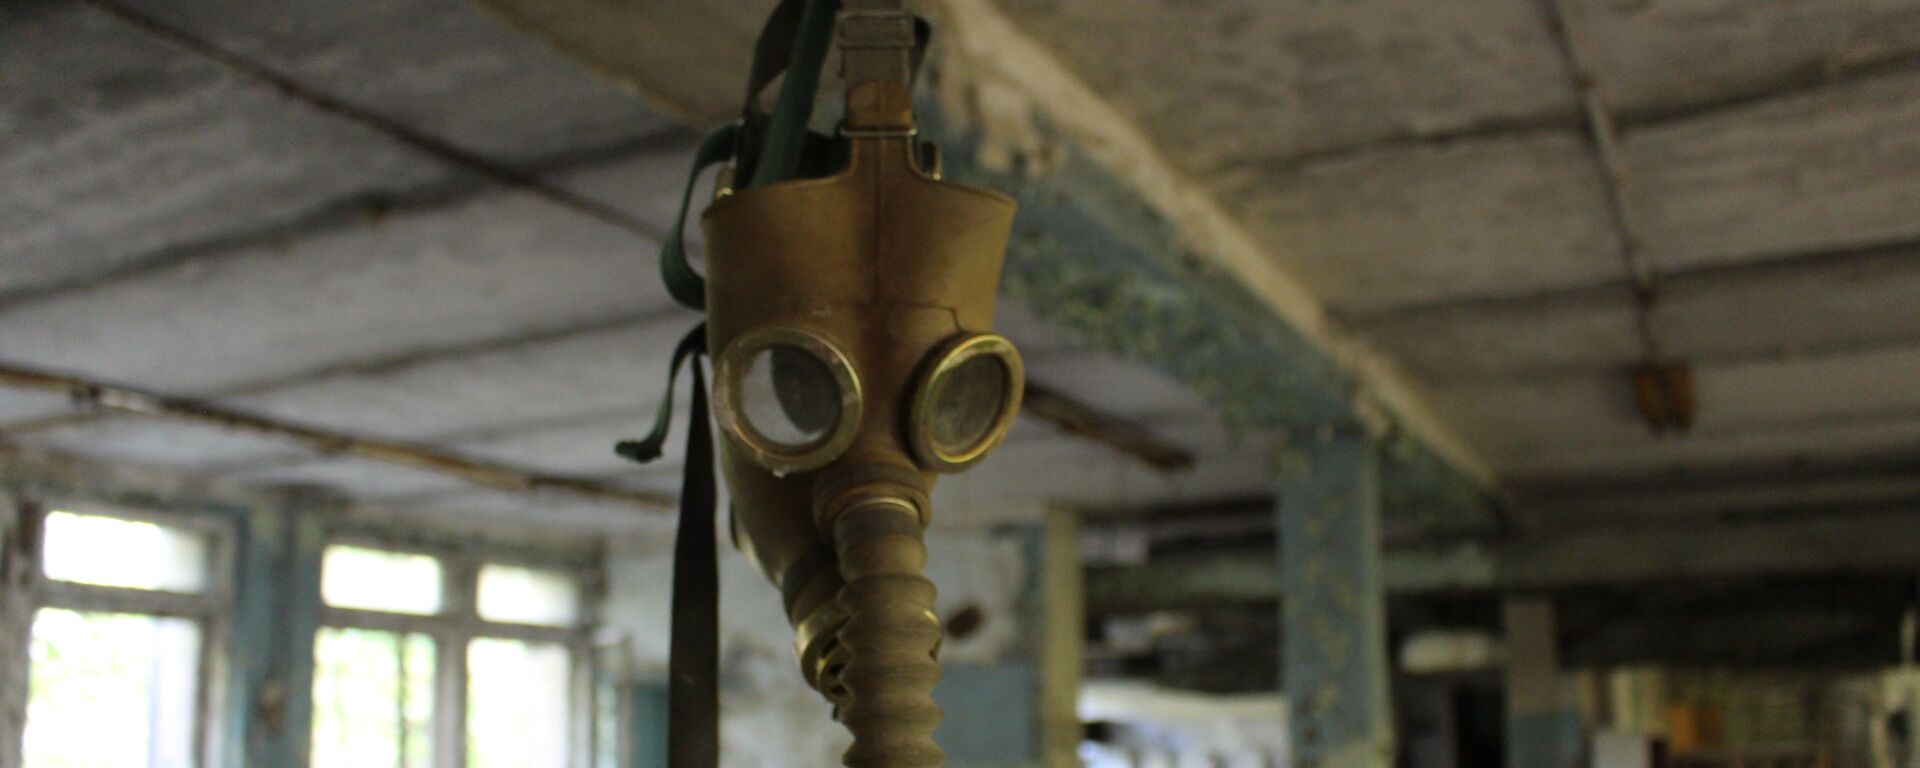 Máscara antigás en Chernóbil - Sputnik Mundo, 1920, 12.06.2019